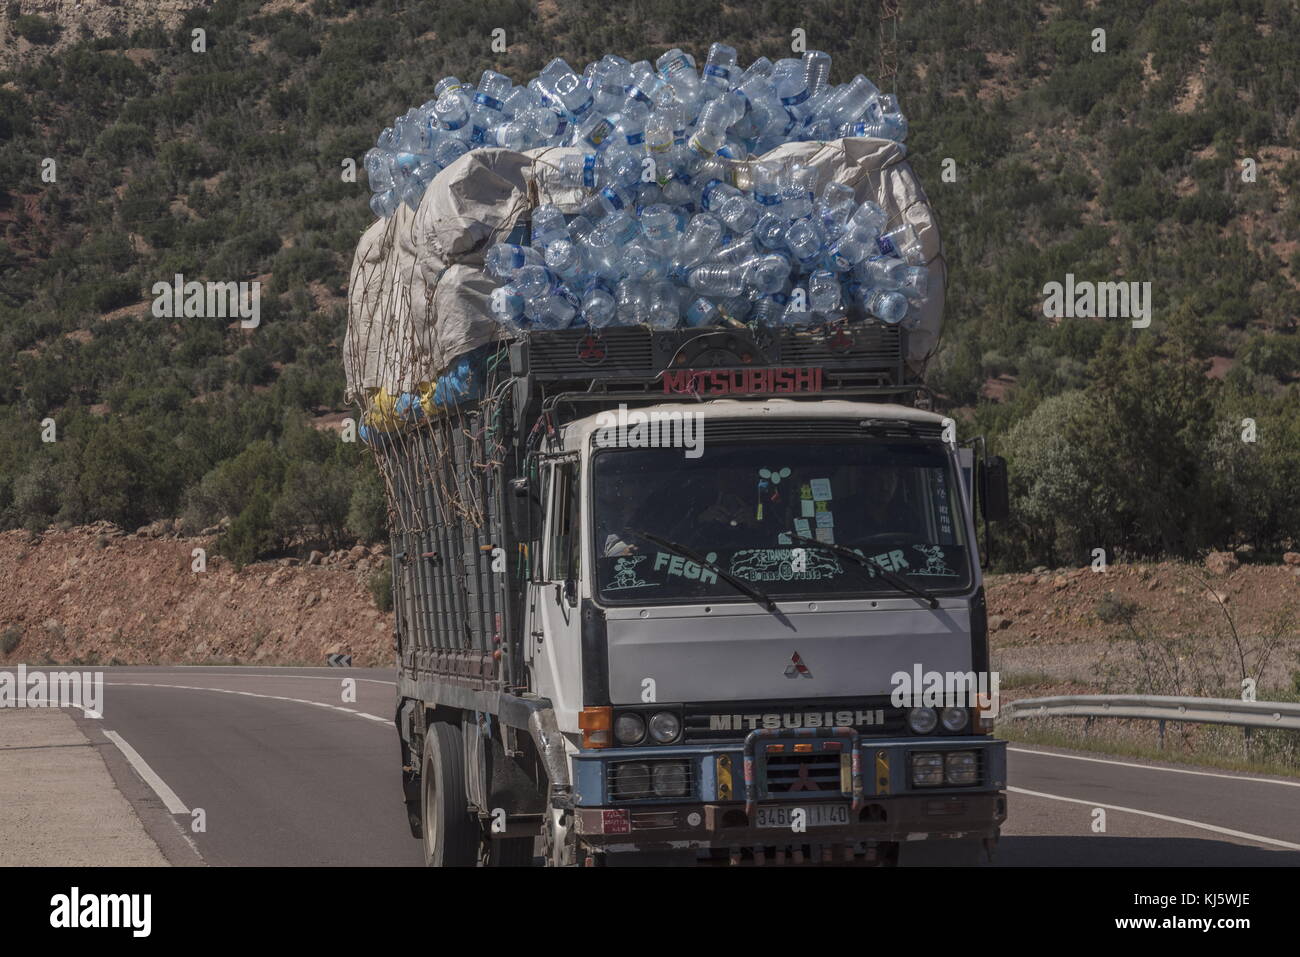 Transport de conteneurs d'eau en plastique utilisées pour la réutilisation, au sud-ouest du Maroc. Banque D'Images